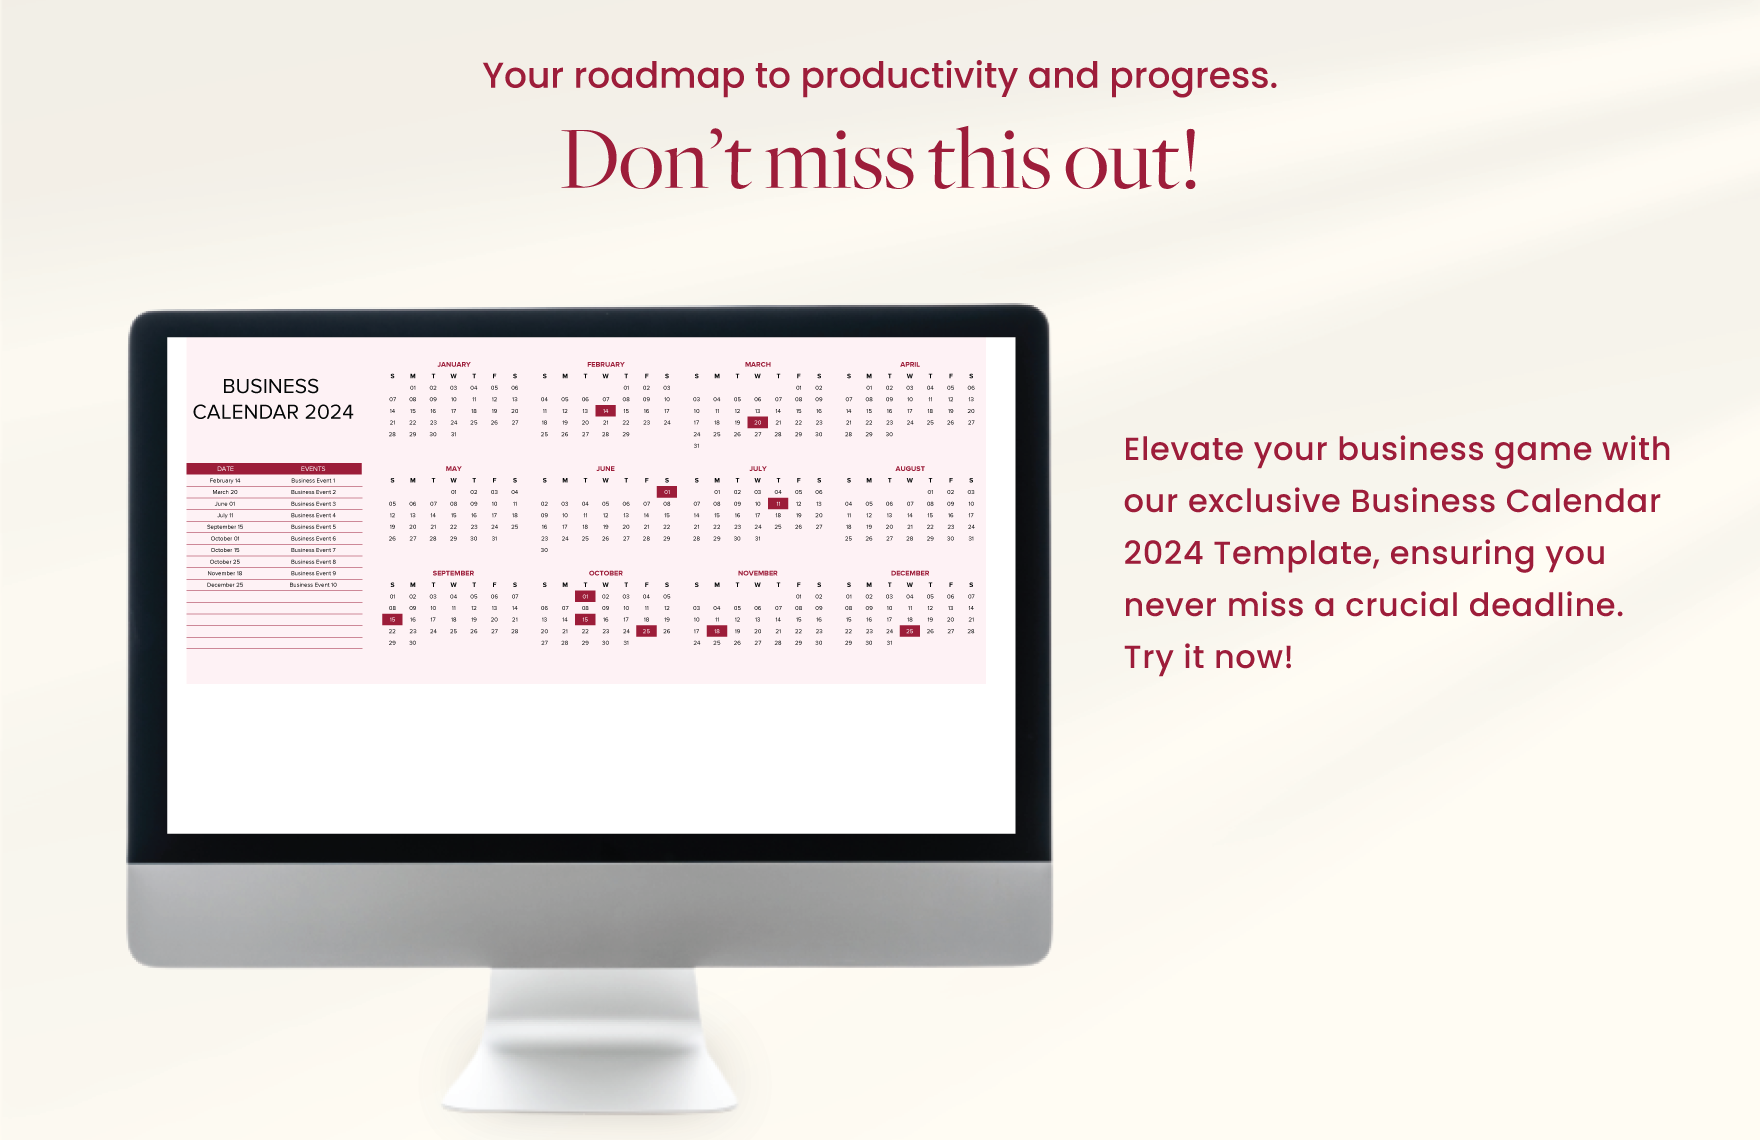 Business Calendar 2024 Template